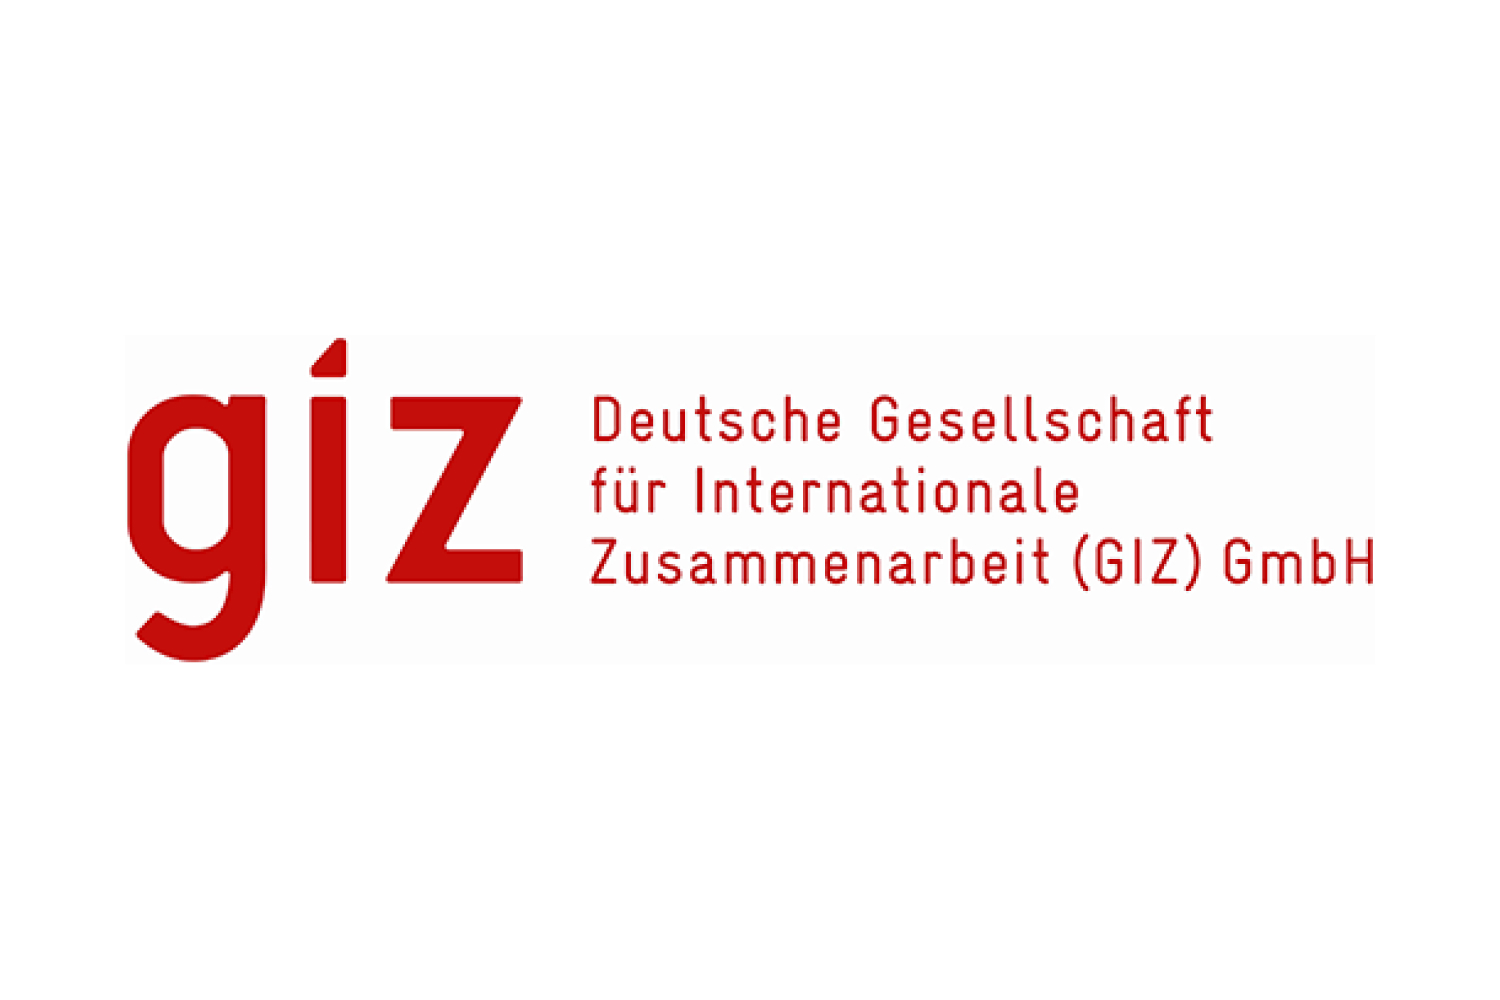 Deutsche Gesellschaft für Internationale Zusammenarbeit (GIZ) GmbH logo